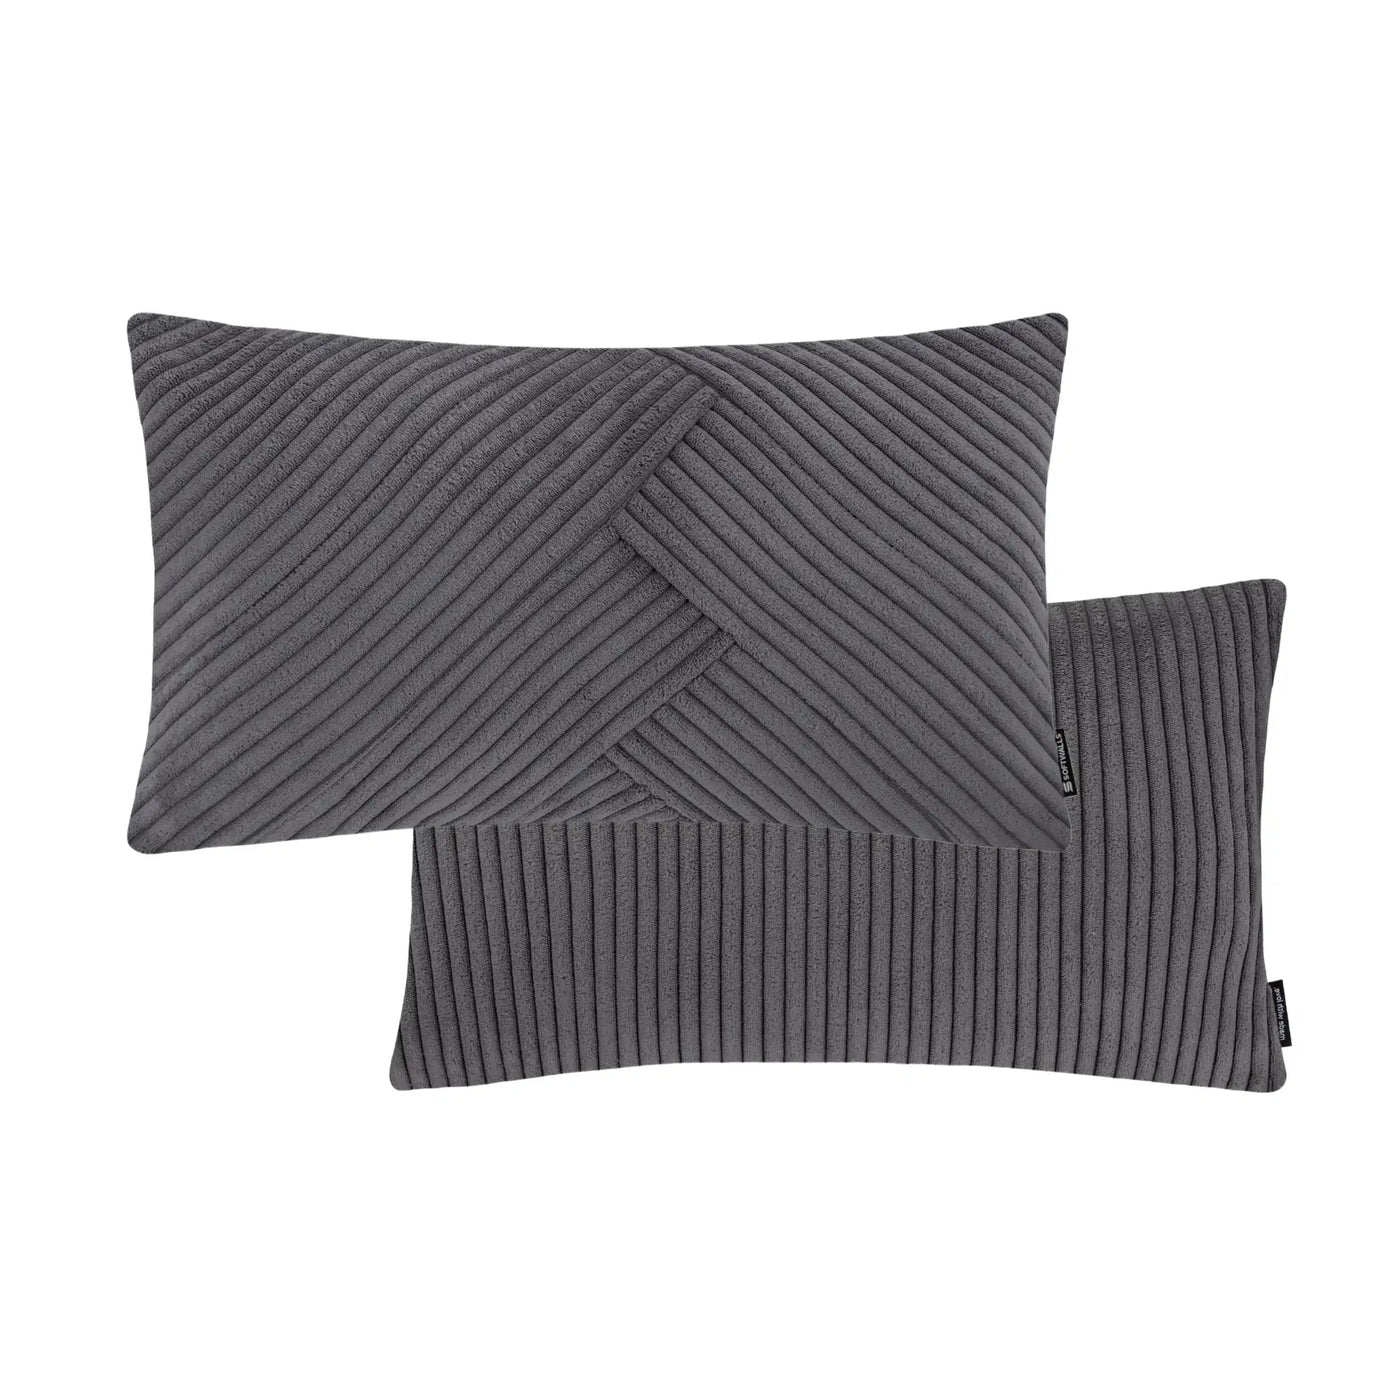 Kissenhülle Wendekissen Cord in der Größe 50 x 30 cm und der Farbe dunkel Grau.